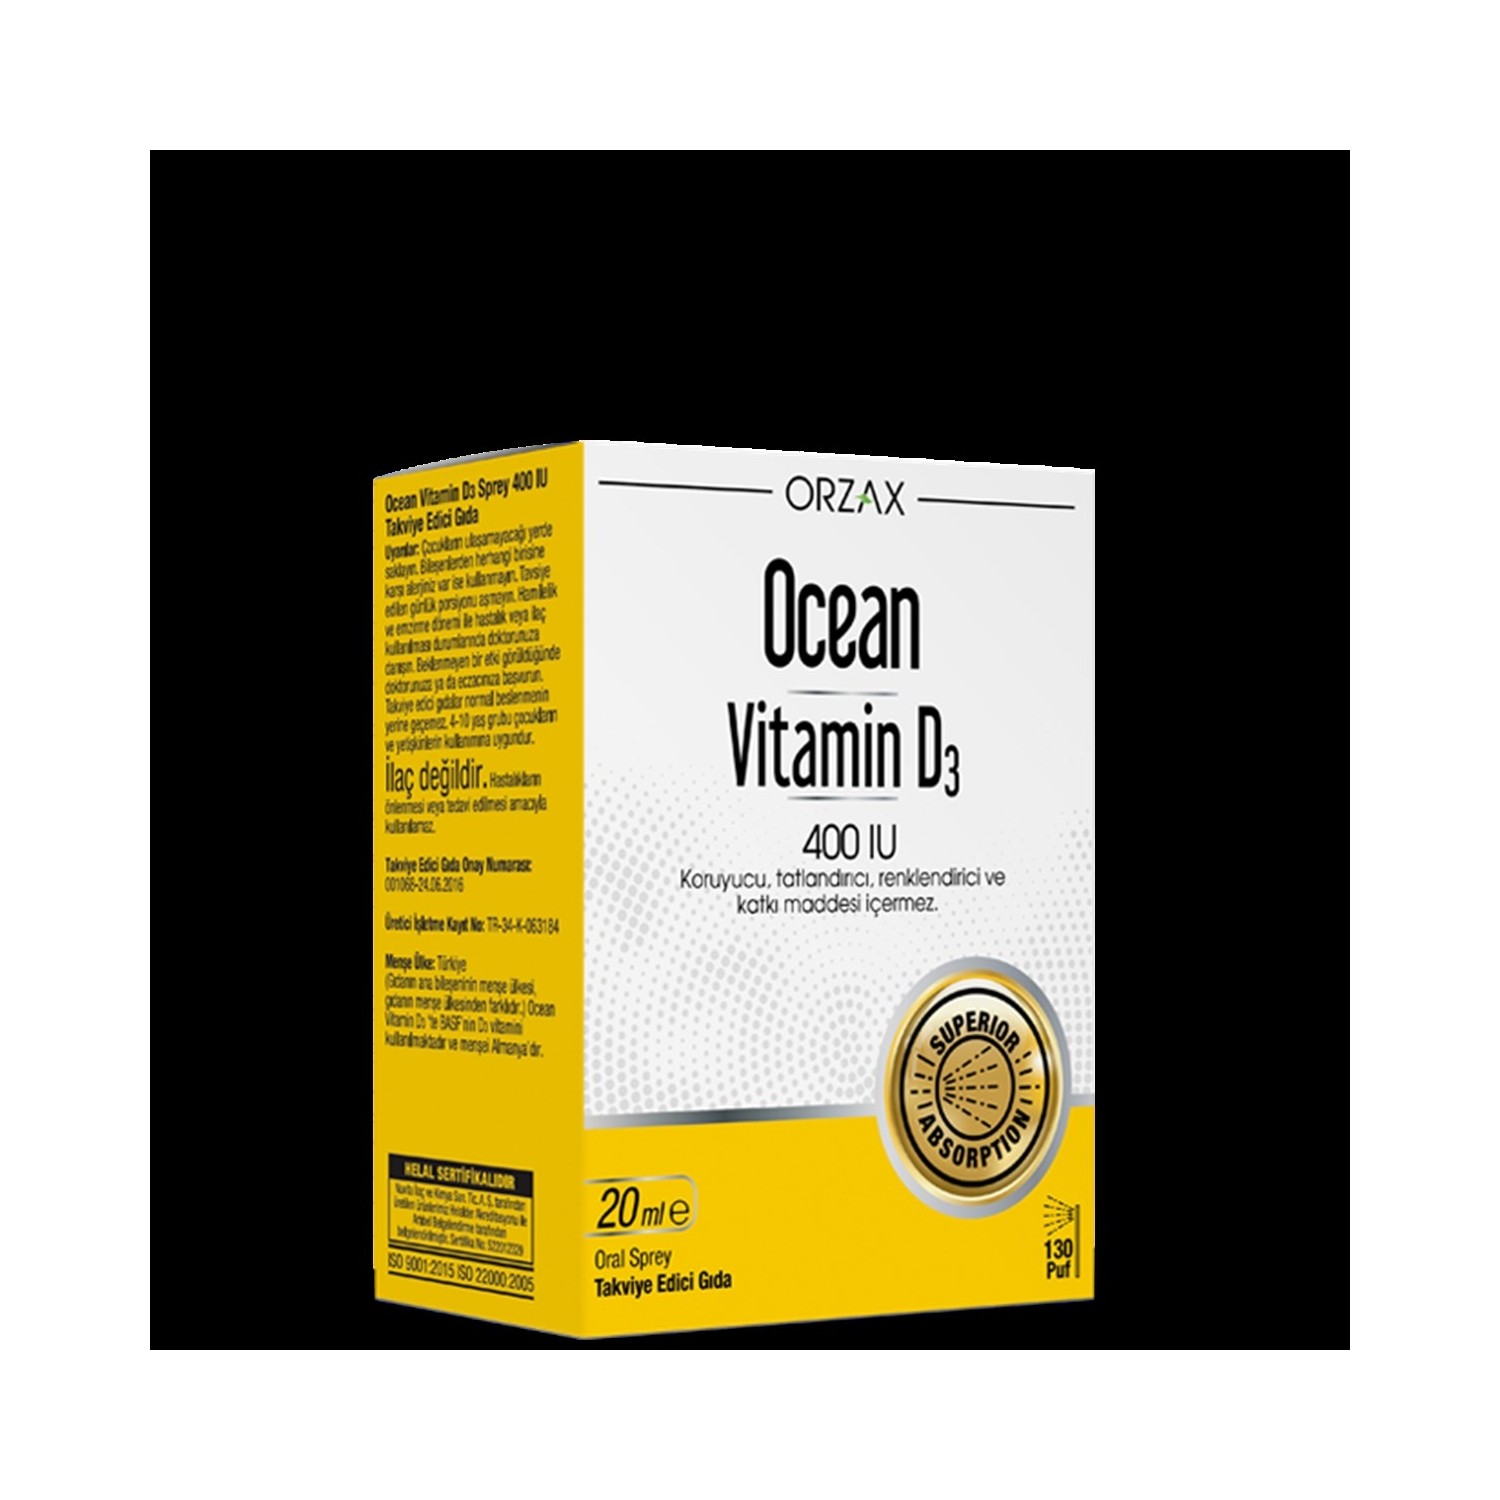 Спрей витамин D3 Ocean 400 МЕ, 20 мл мелатонин спрей с витамином в6 и мятой 60 доз 10 мл